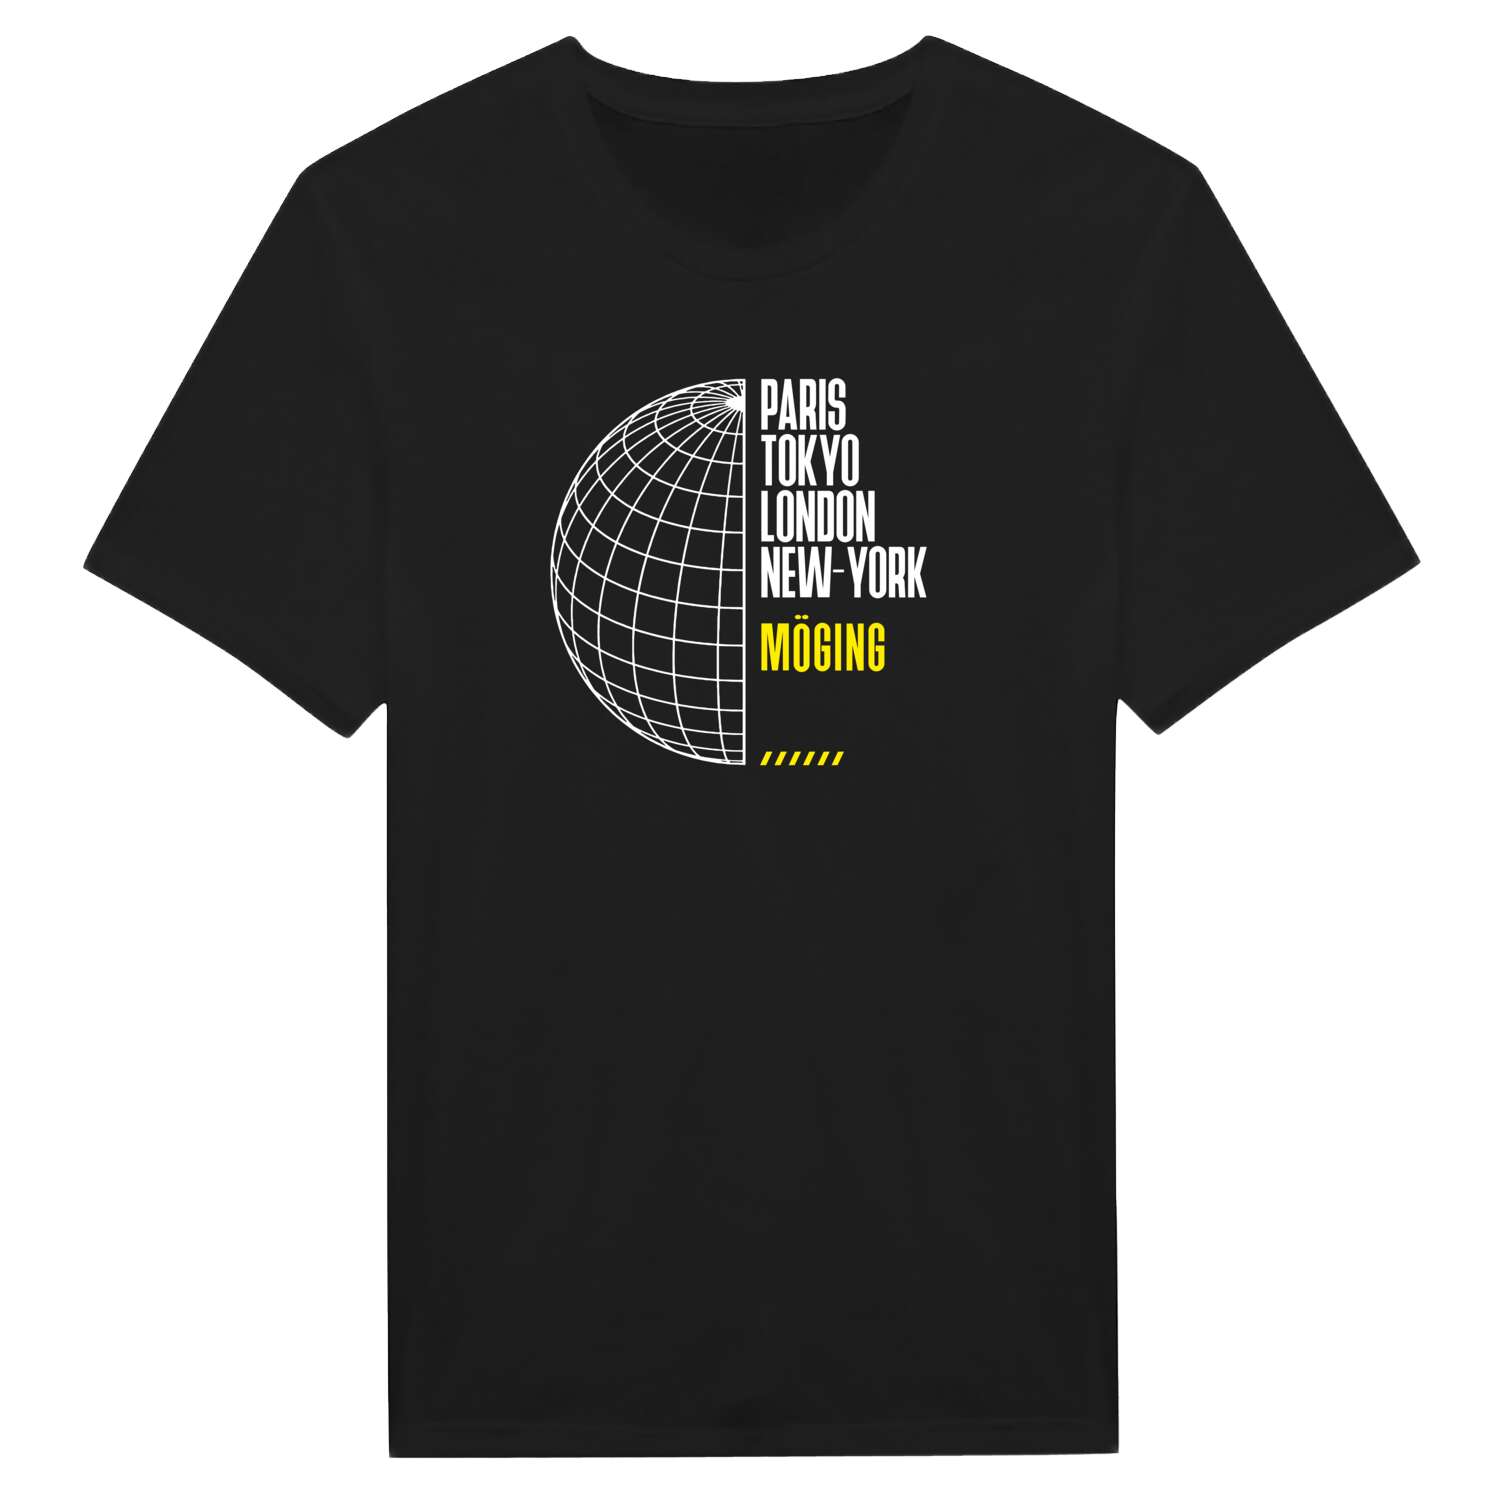 Möging T-Shirt »Paris Tokyo London«